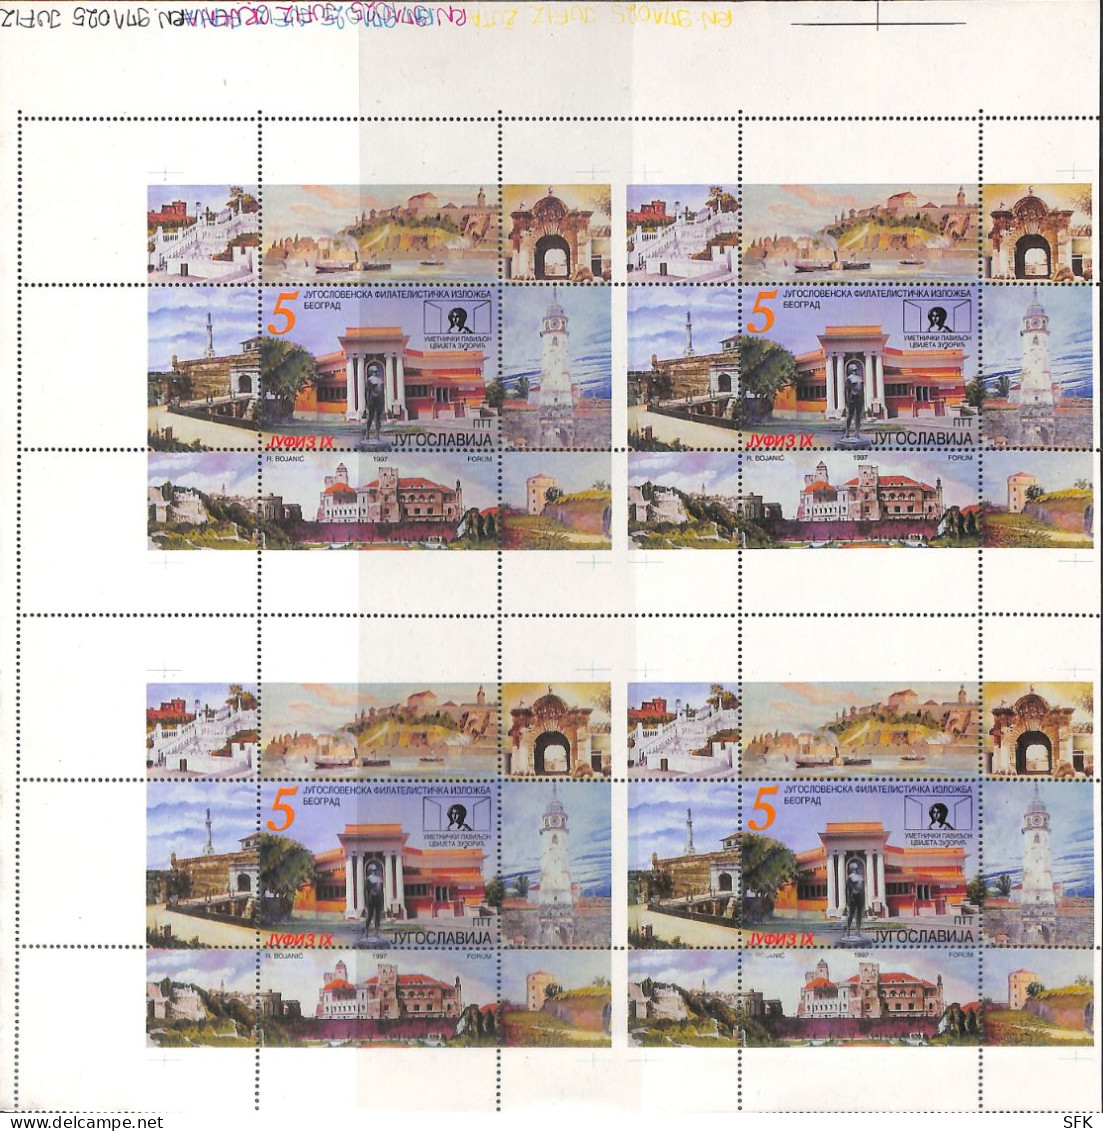 1991 PHILATELIC EXHIBITION JUFIZ IX, Plate WITH 4 MINIATURE SHEETS (BLOCKS) IN Se-tenant.MNH - Sin Dentar, Pruebas De Impresión Y Variedades